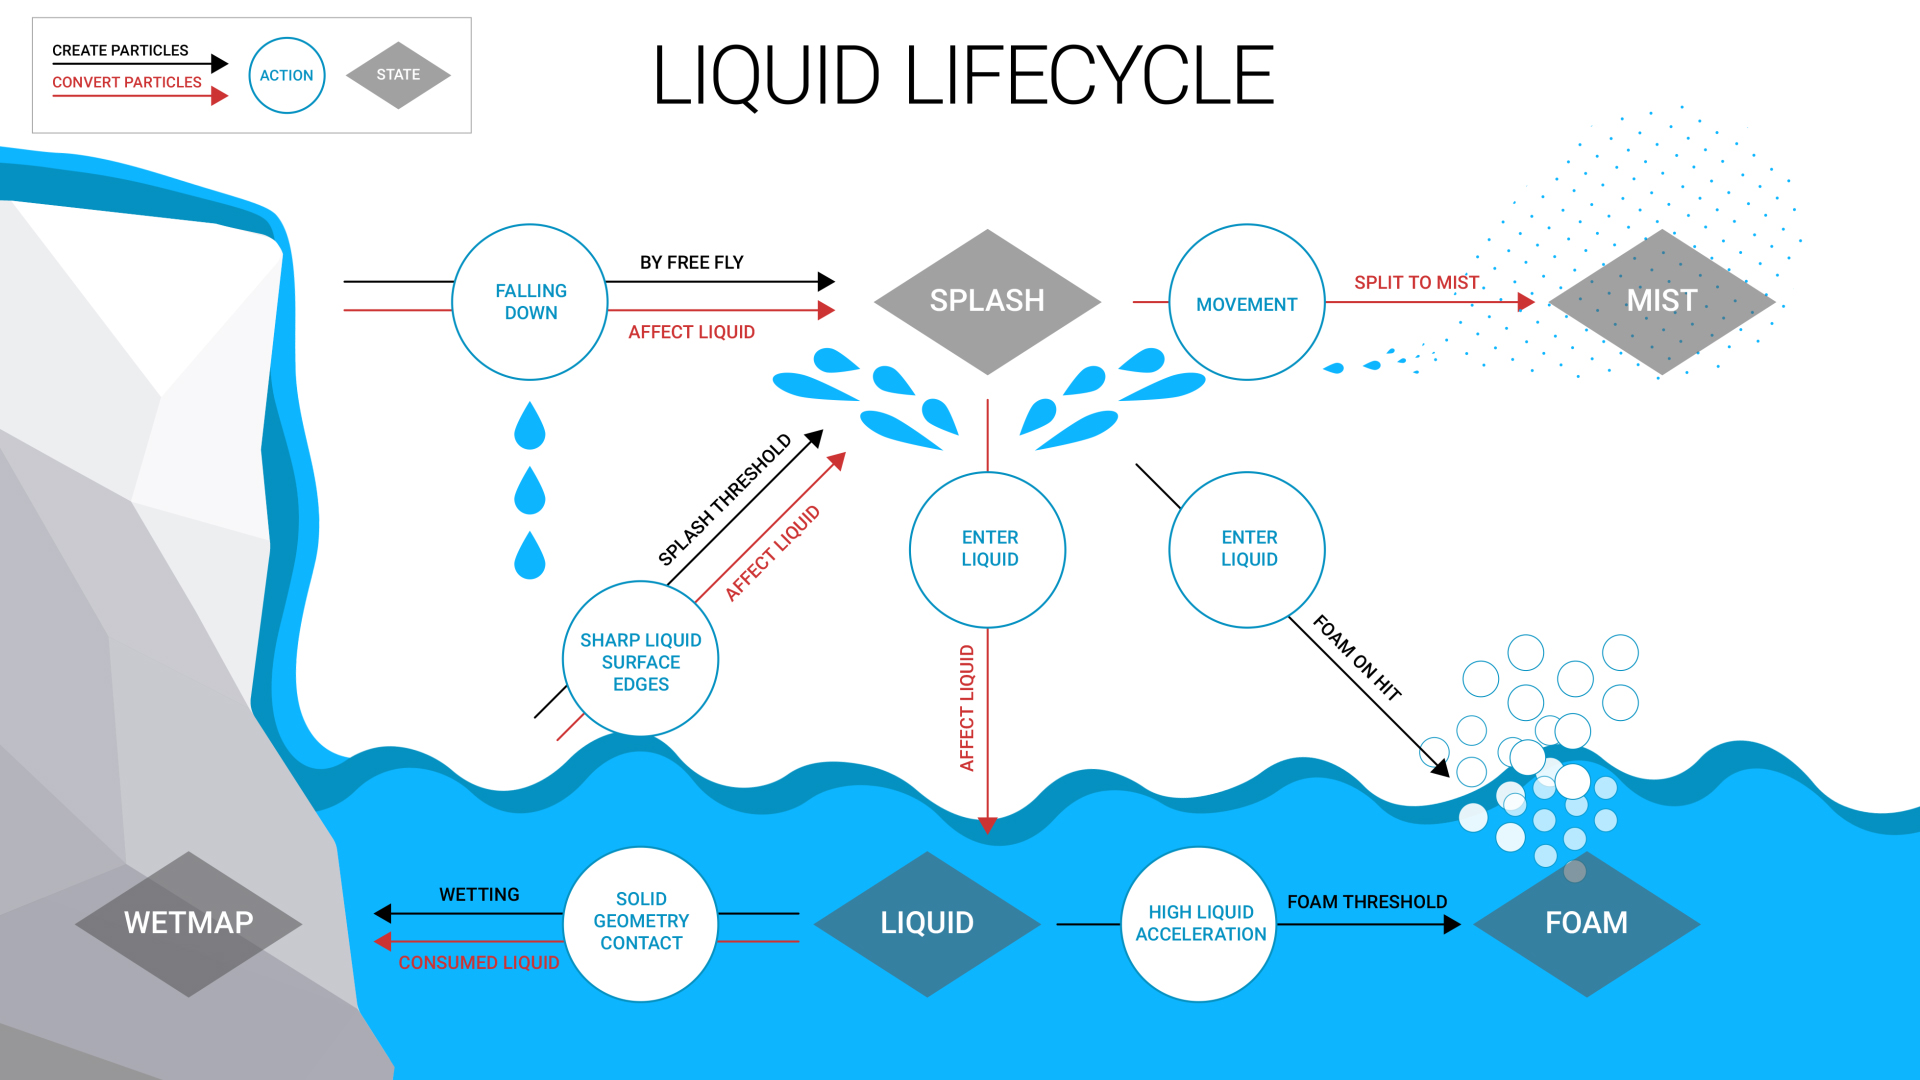 Liquid lifecycle